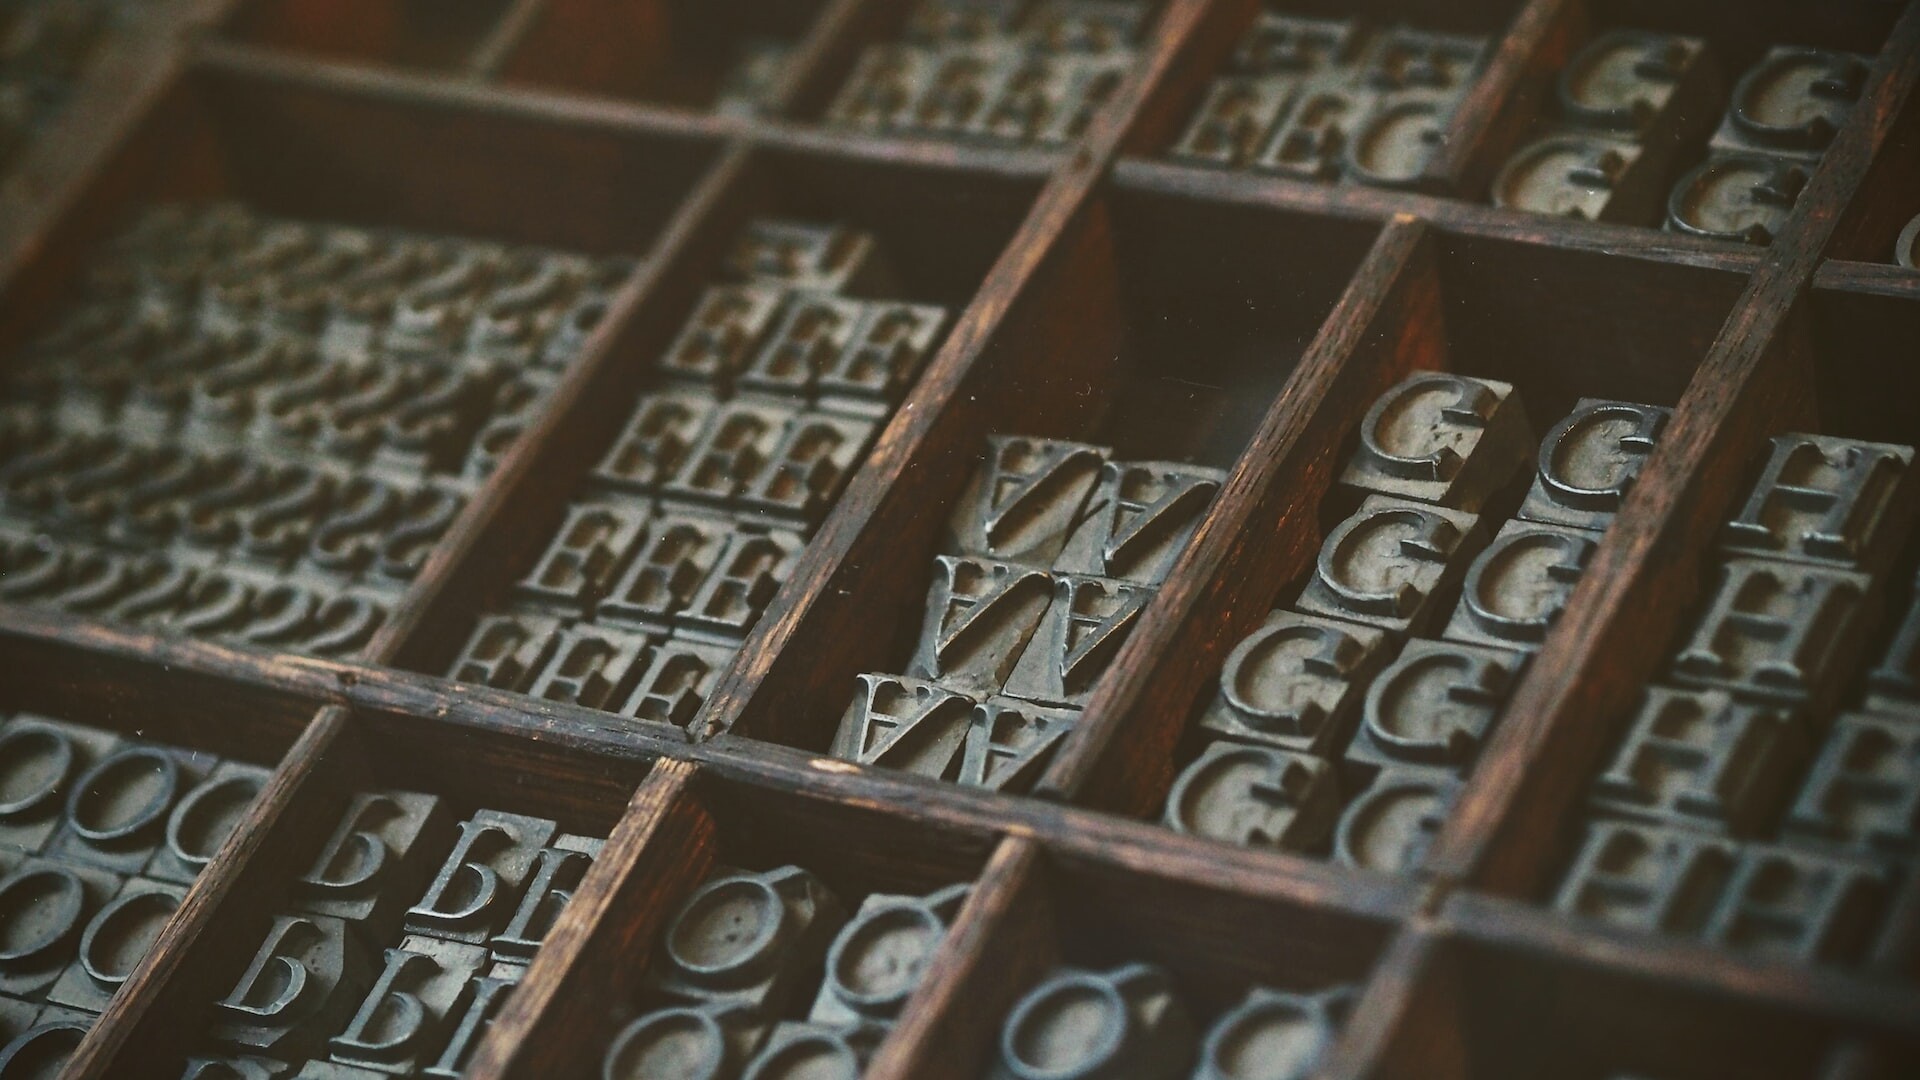 Bild von einzelnen Buchstaben, die zum Drucken verwendet werden. 